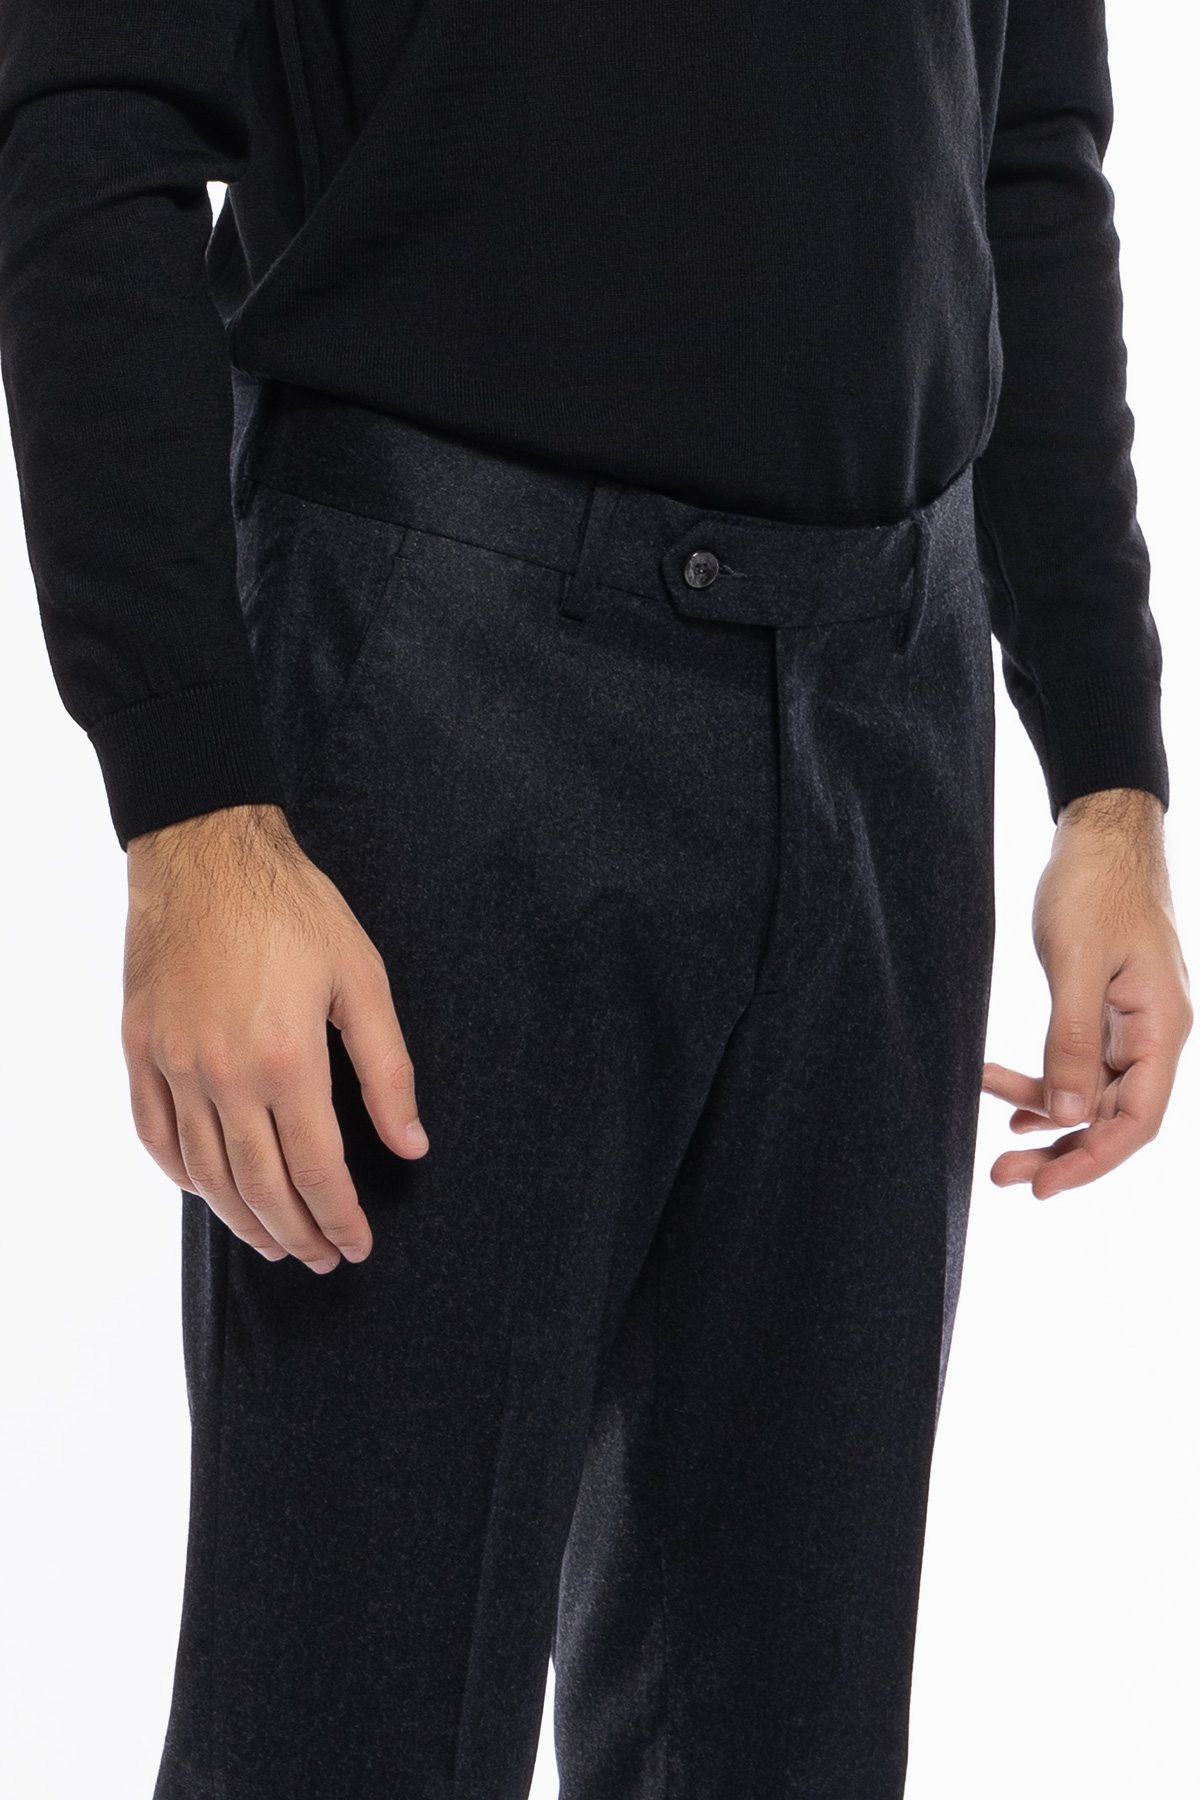 Pantalone uomo grigio scuro vita alta tasca america in lana flanella con pinces e fibbie laterali Vitale Barberis Canonico